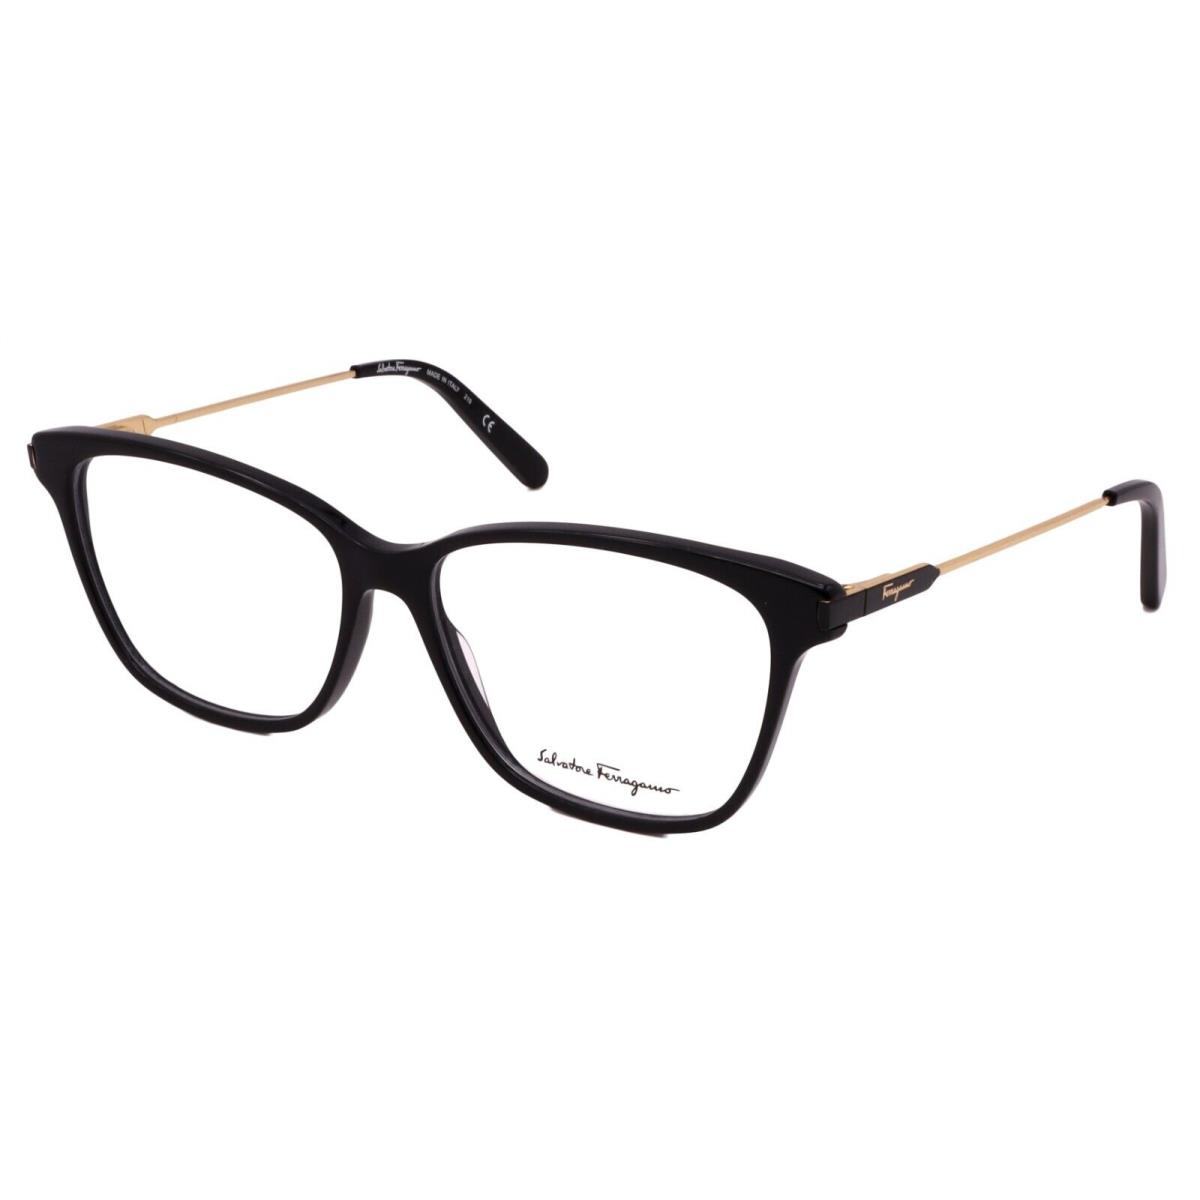 Salvatore Ferragamo SF2851 001 Unisex Optical Glasses